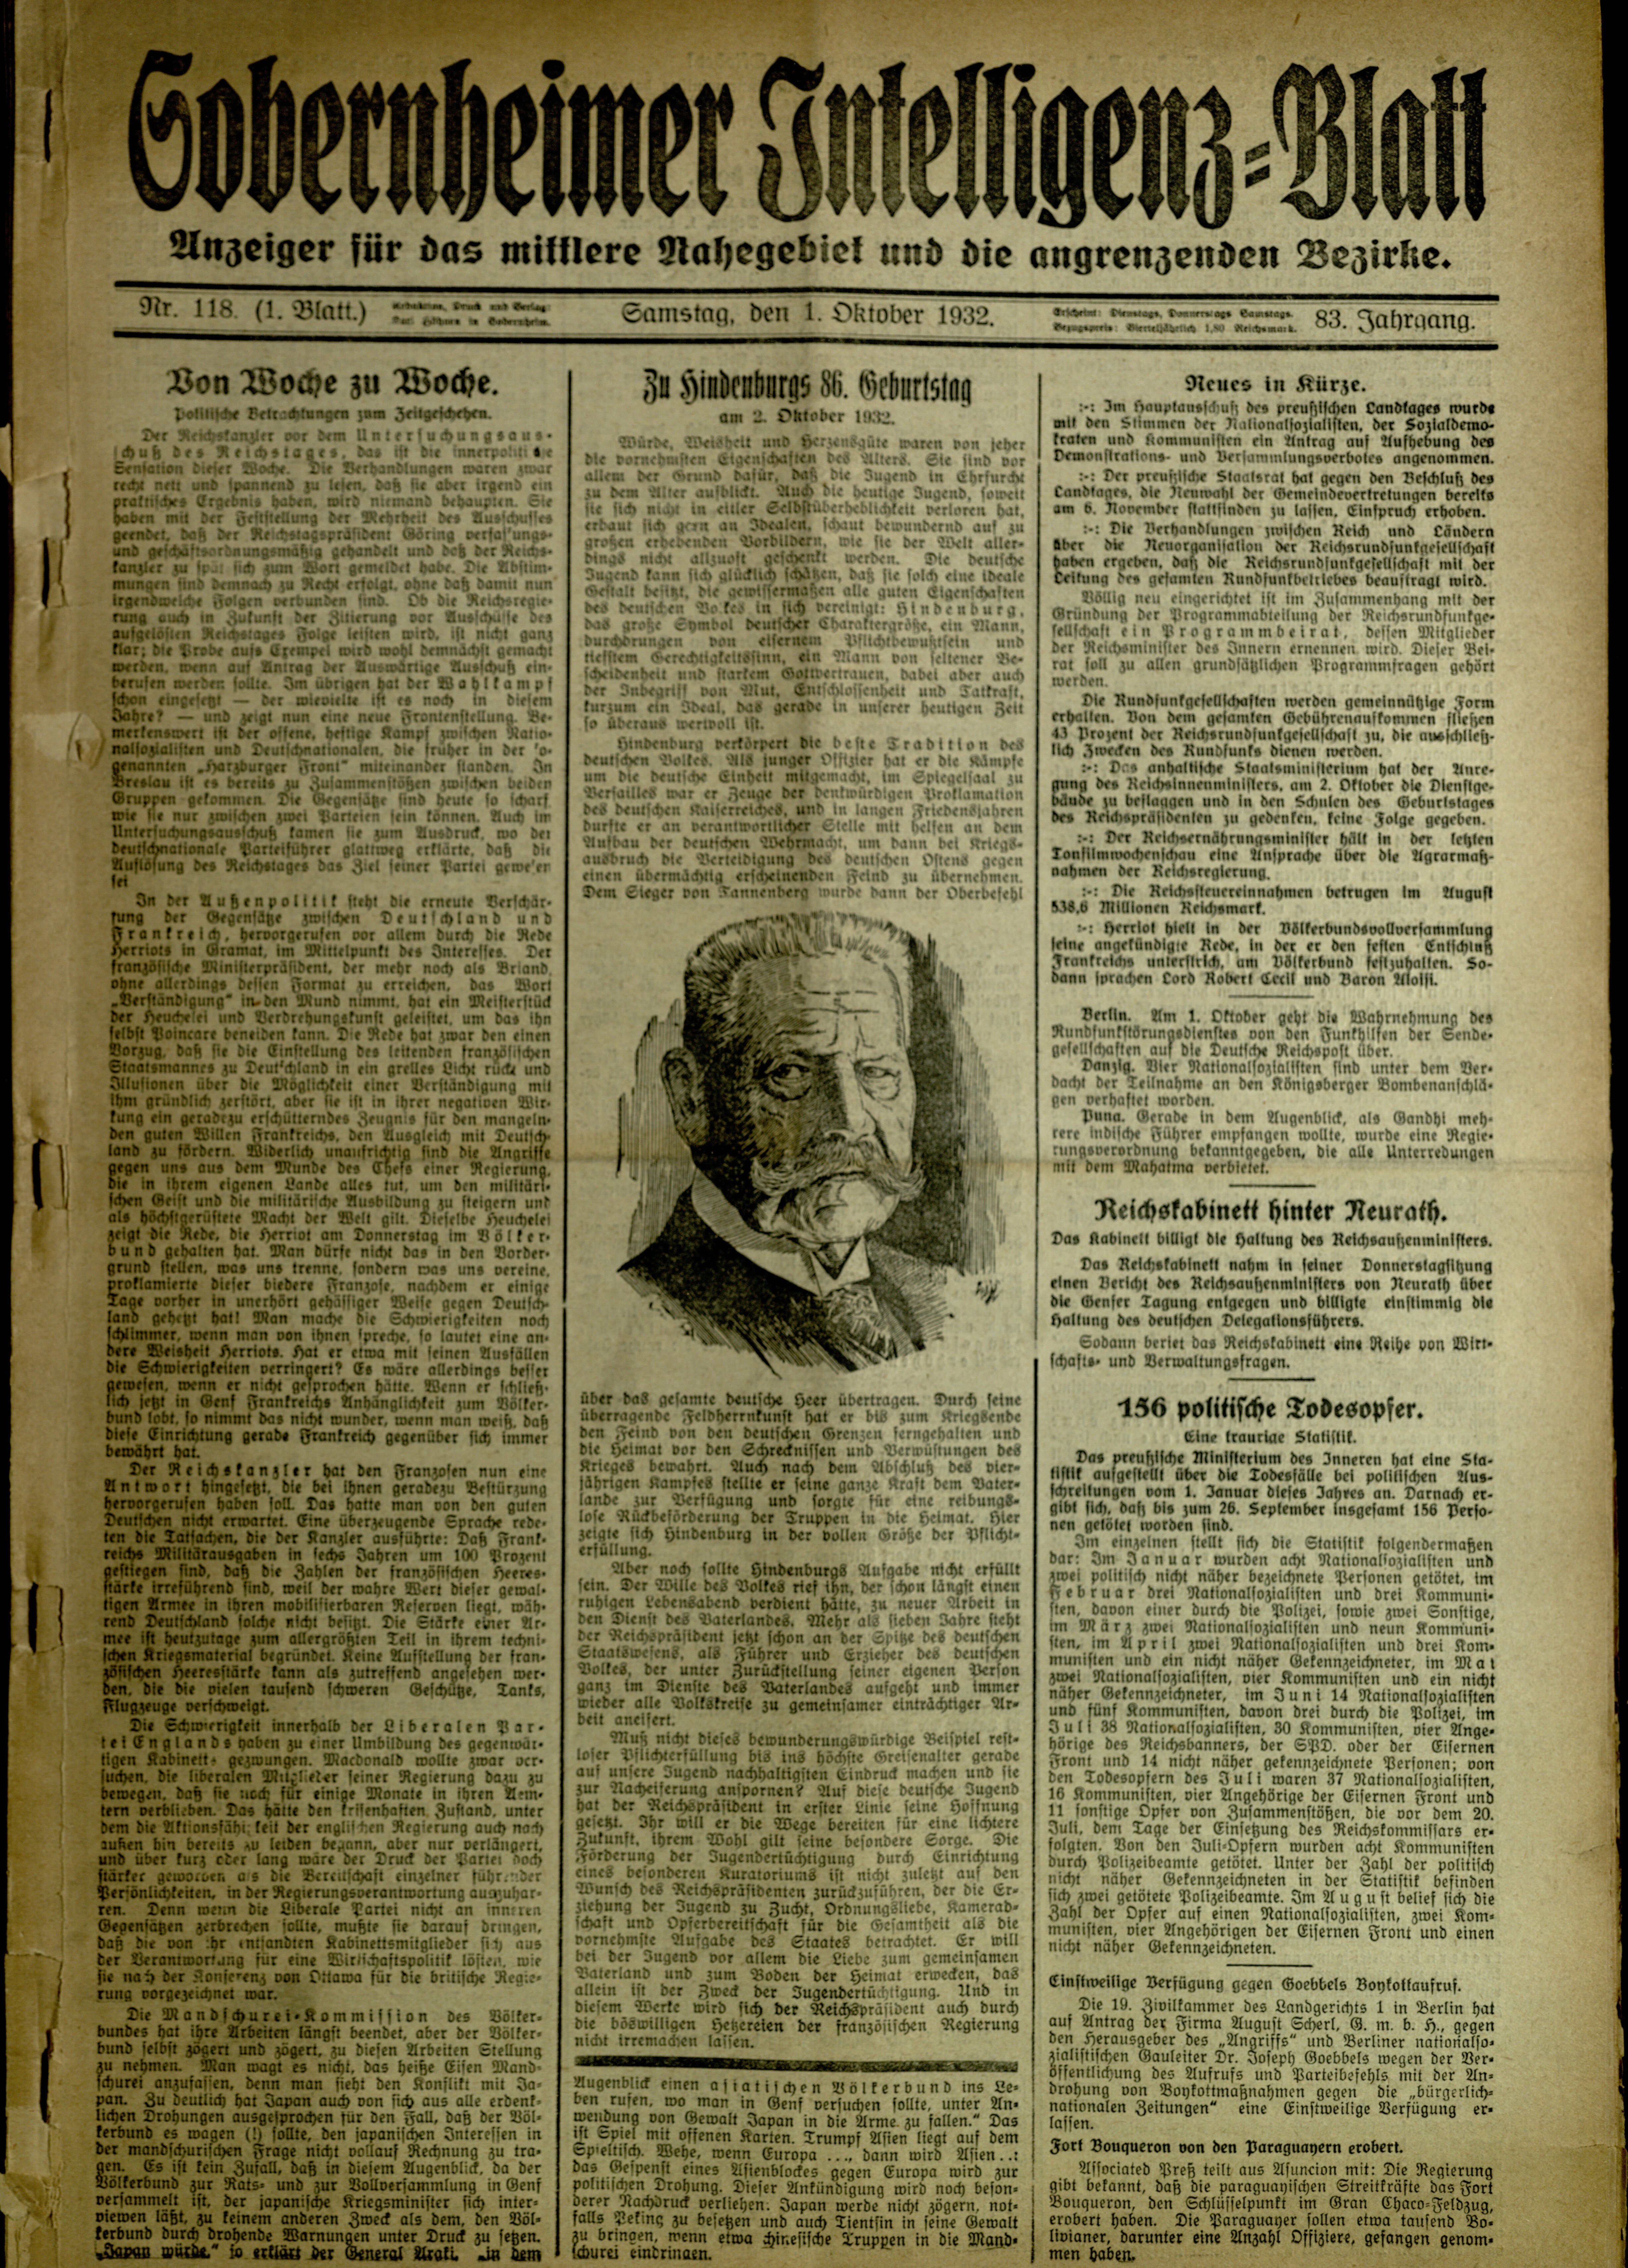 Zeitung: Sobernheimer Intelligenzblatt; Oktober 1932, Jg. 83 Nr. 118 (Heimatmuseum Bad Sobernheim CC BY-NC-SA)